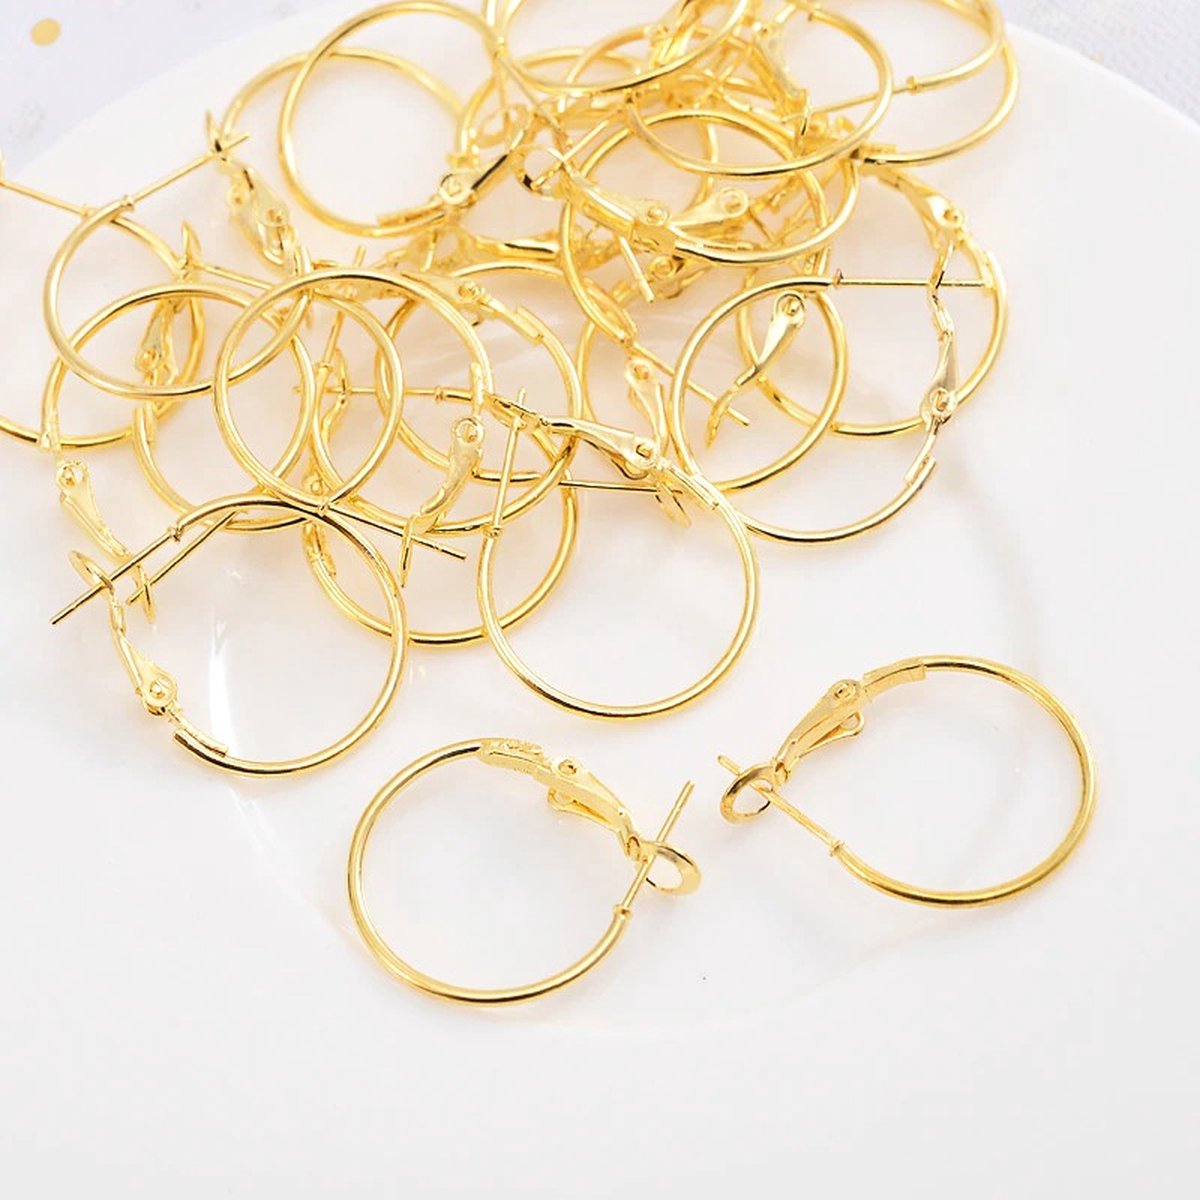 WiseGoods Luxe Set Oorbel Ringen - Haken Voor Oorbellen - DIY - Hobby - Sieraad - Sieraden Maken - Handwerken - Loop - Goud - 30st - WiseGoods